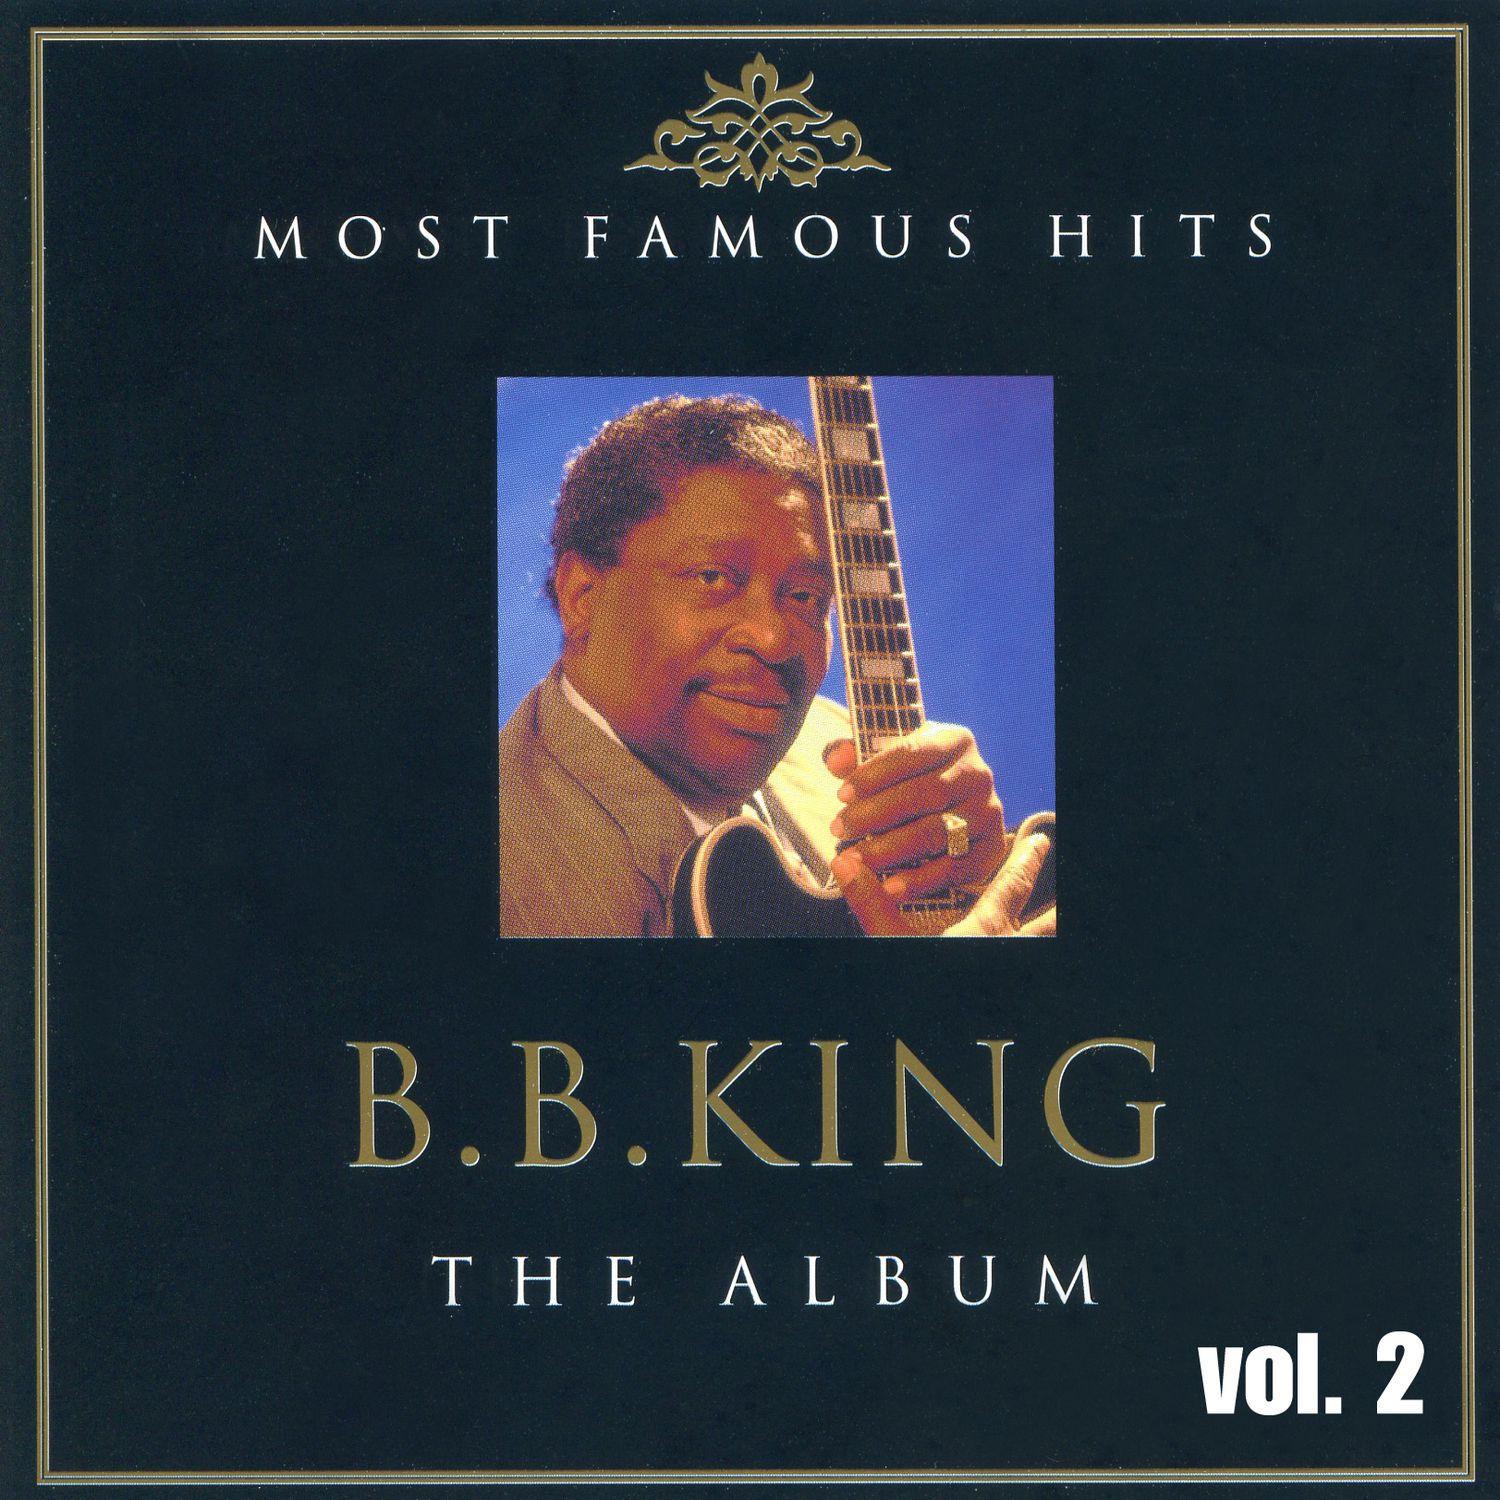 B.B. King the Album Vol. 2